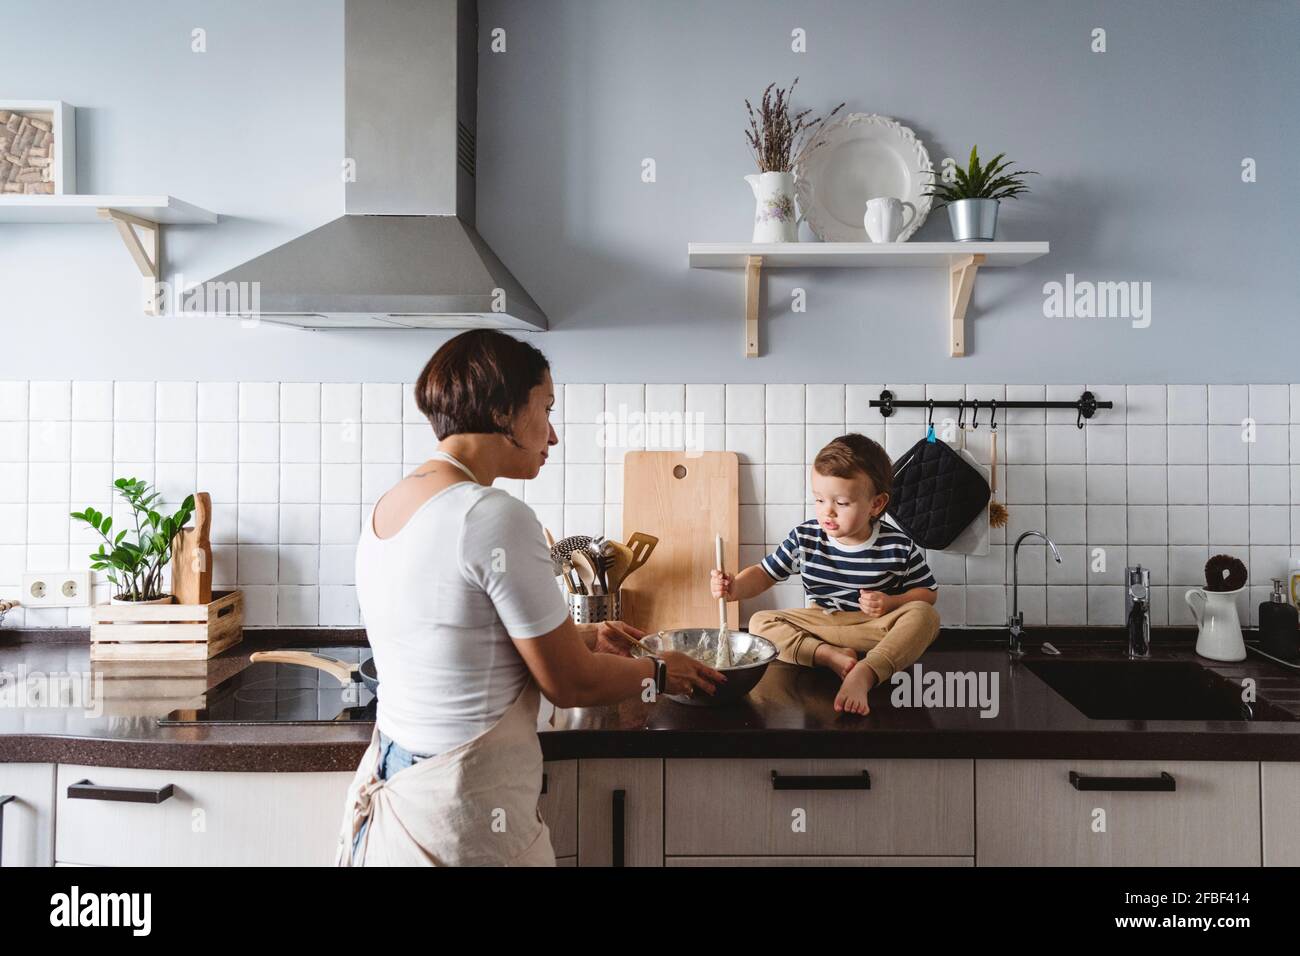 Mutter sieht sich ein niedliches Kind an, das mit einer Schüssel auf dem Tisch spielt Küchentisch zu Hause Stockfoto